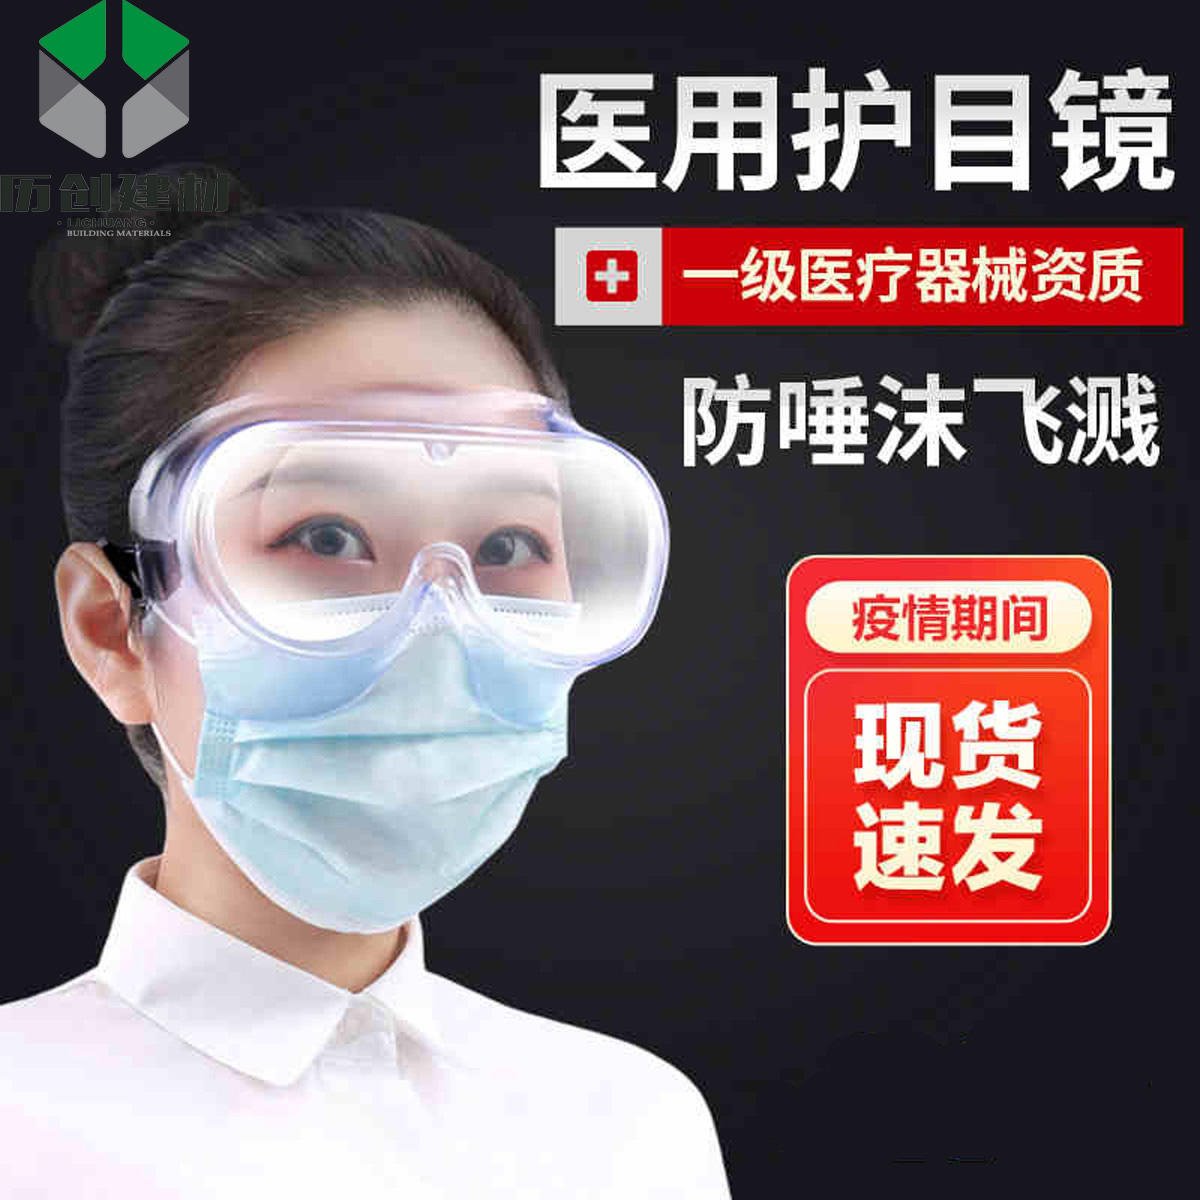 北京 pc耐力板防护面屏 透明 防雾、清晰度高、防飞溅、防粉尘、医用面罩 个人面部防护 厂家直销 快速提货